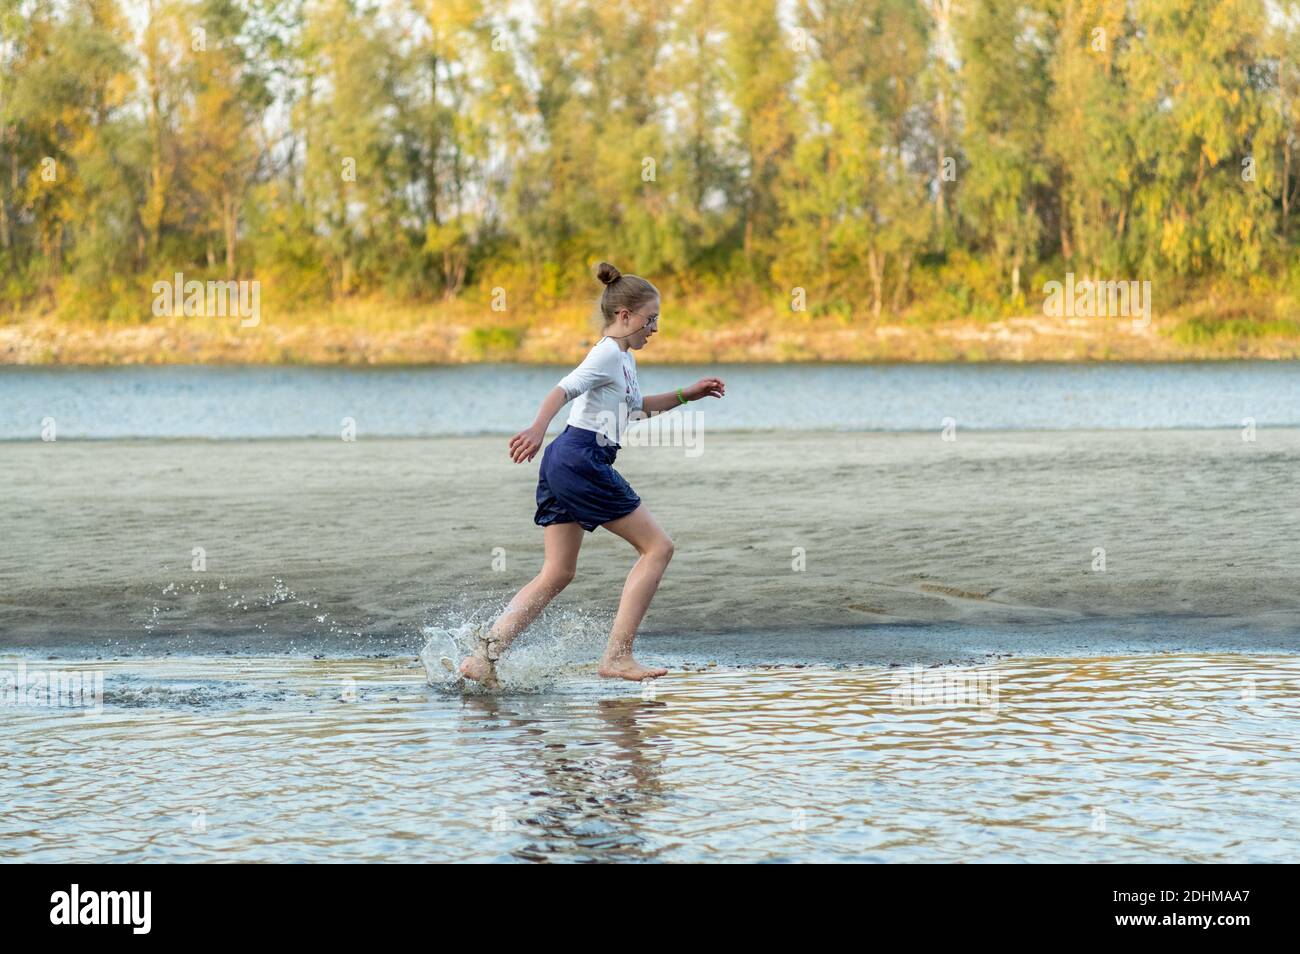 Ein Mädchen, das auf dem Wasser läuft. Das Mädchen spritzt Wasser. Fluss. Herbst. Stockfoto